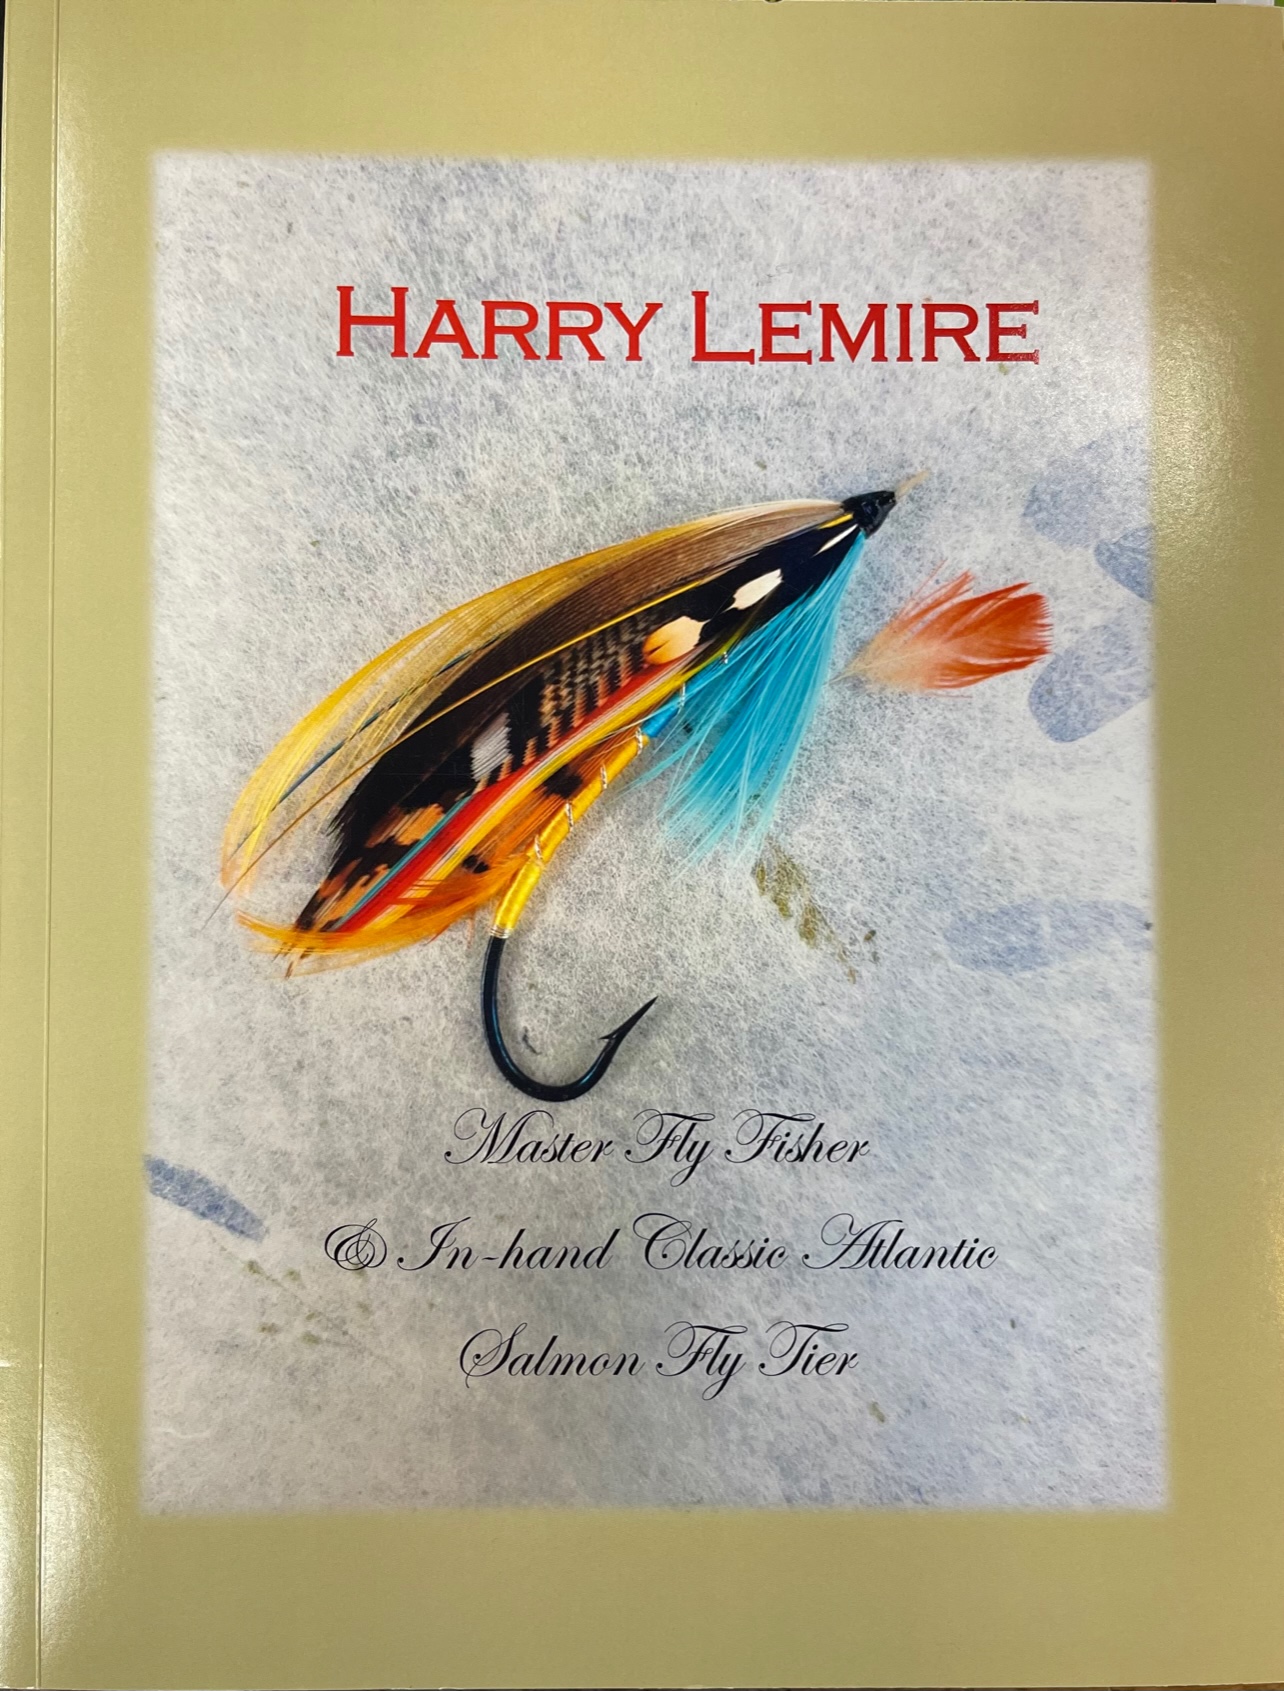 Harry Lemire - by Art Lingren